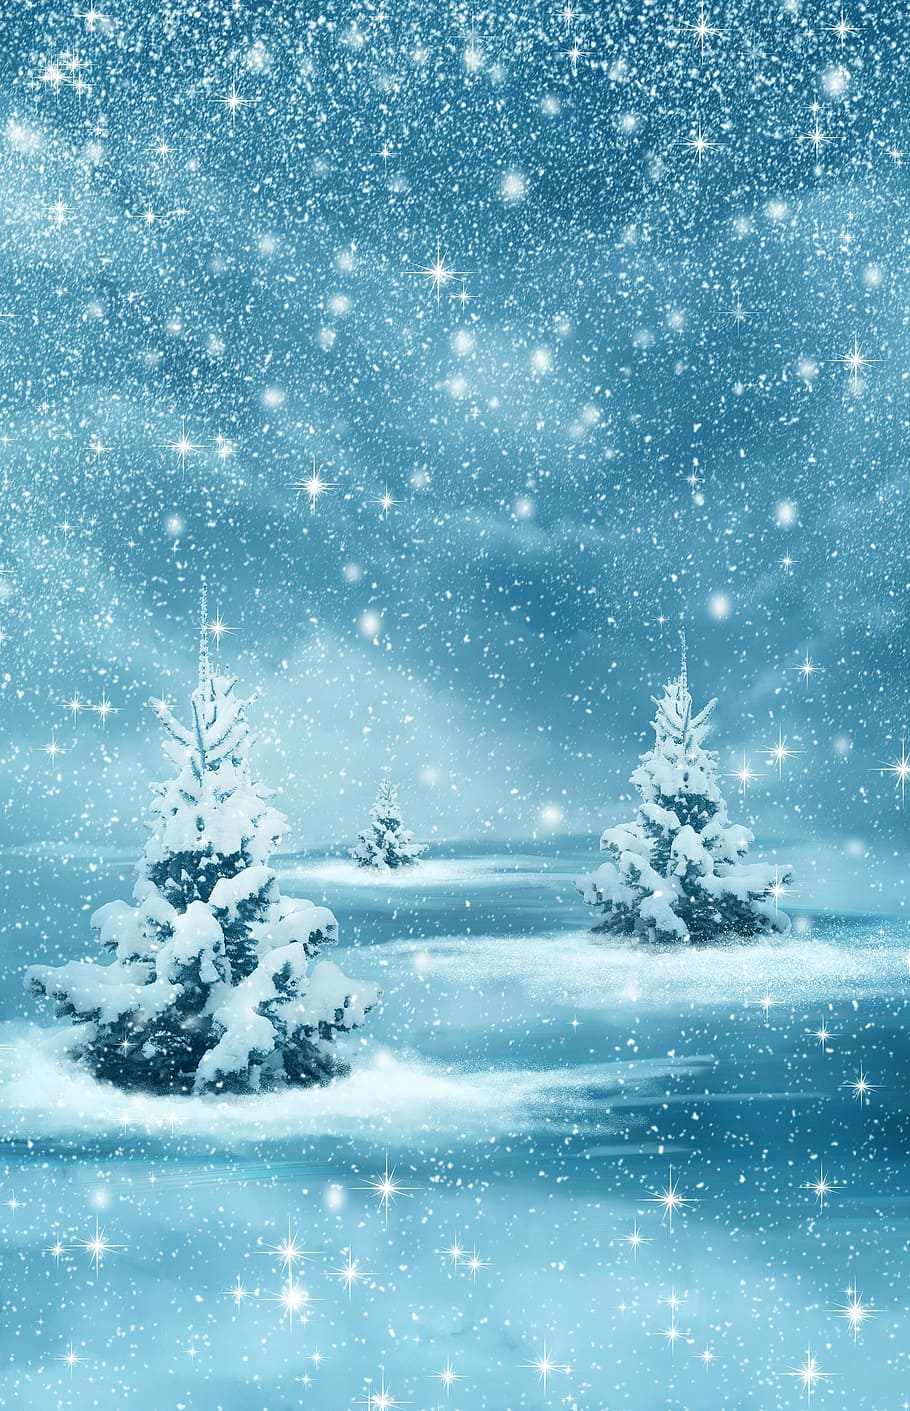 スプルースツリー 雪のイラスト クリスマス 新年 背景 冬 自然 森林 木 モンタージュ Pxfuel